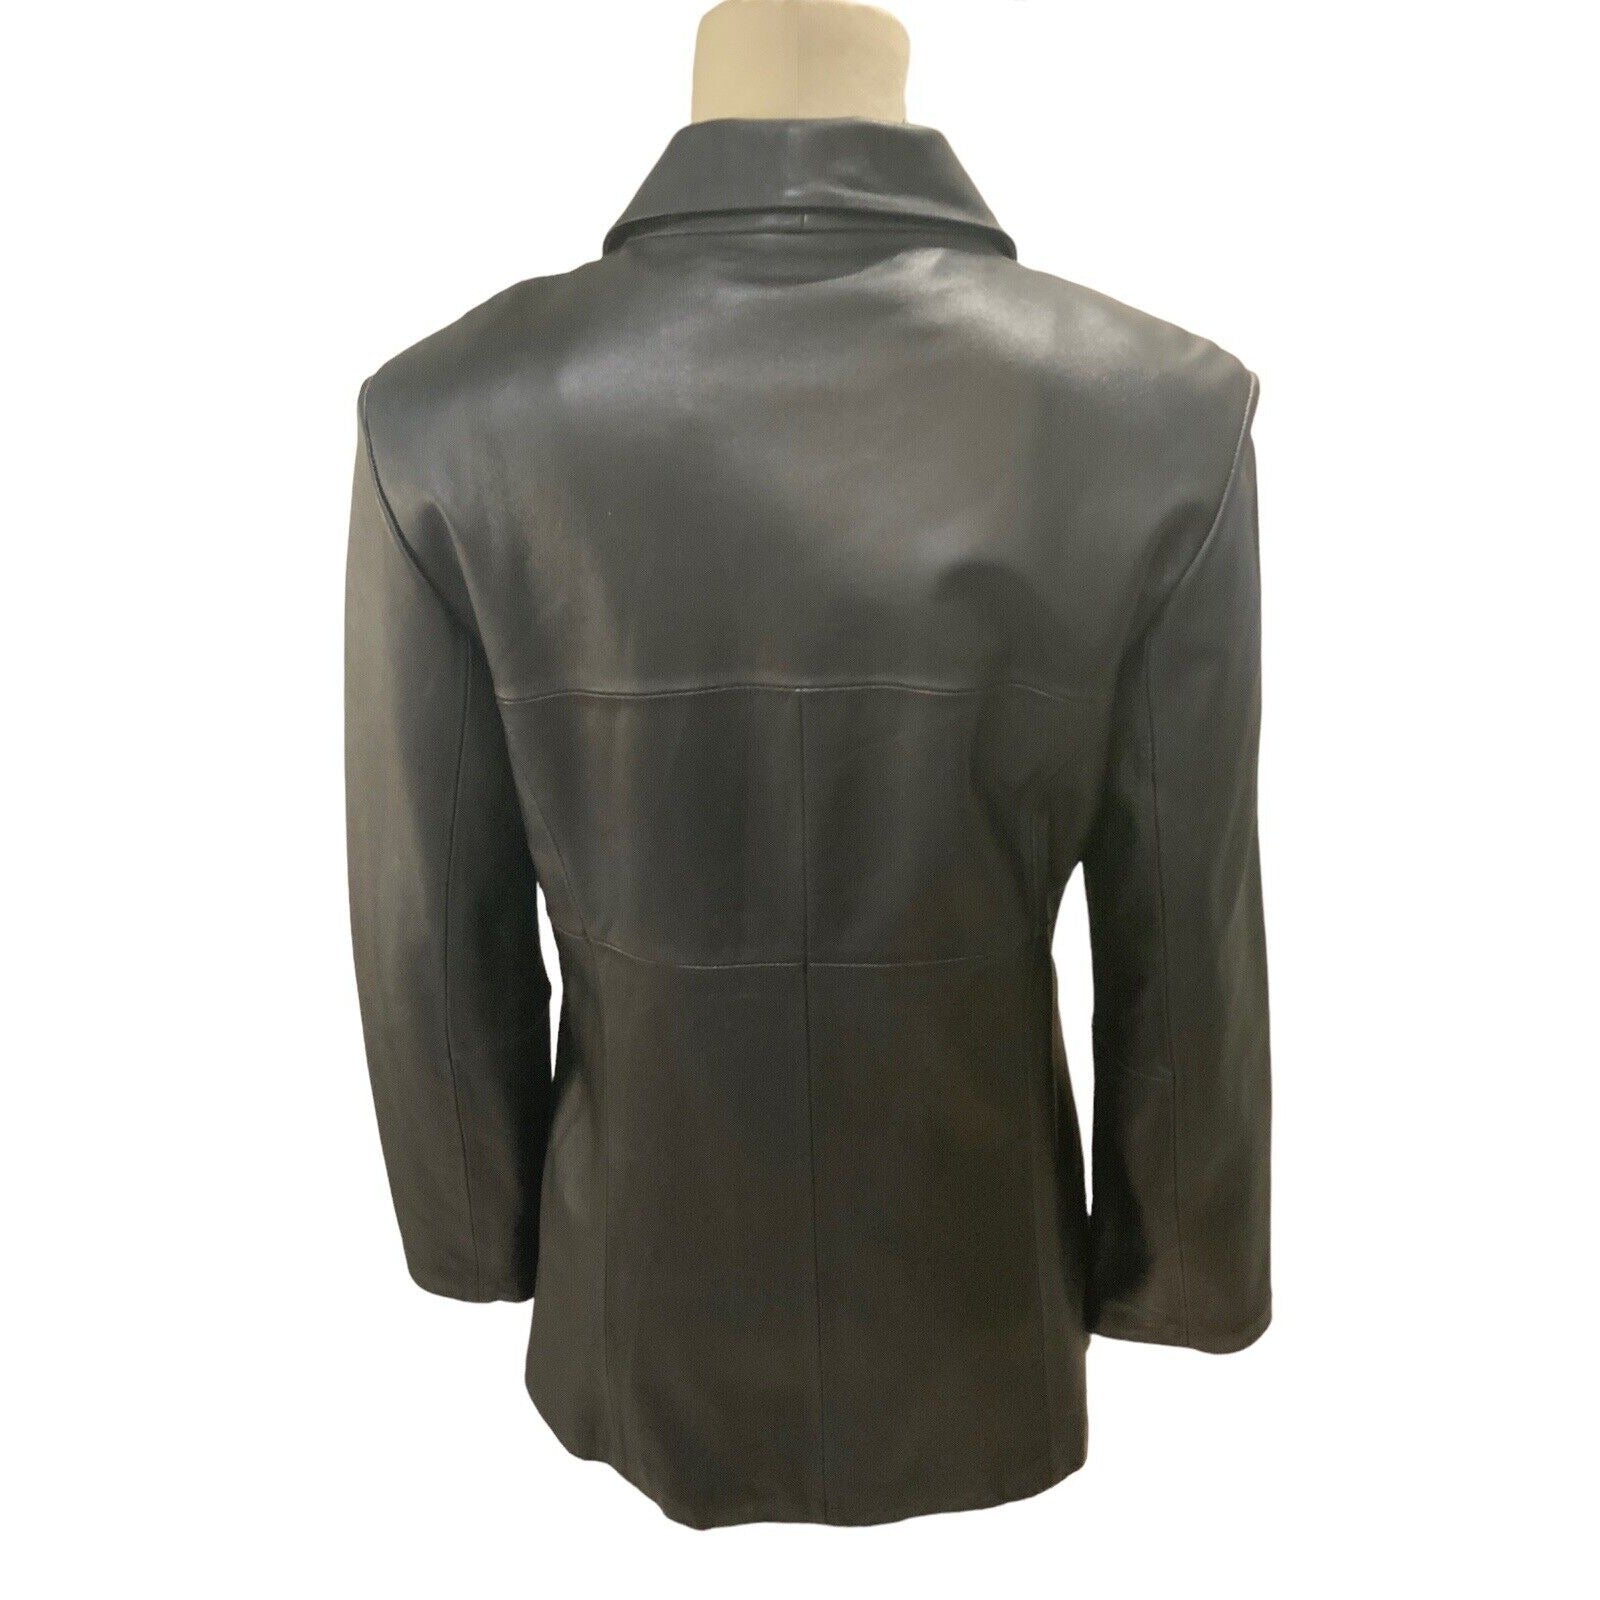 Back View Of Women's Lambskin Leather Jacket